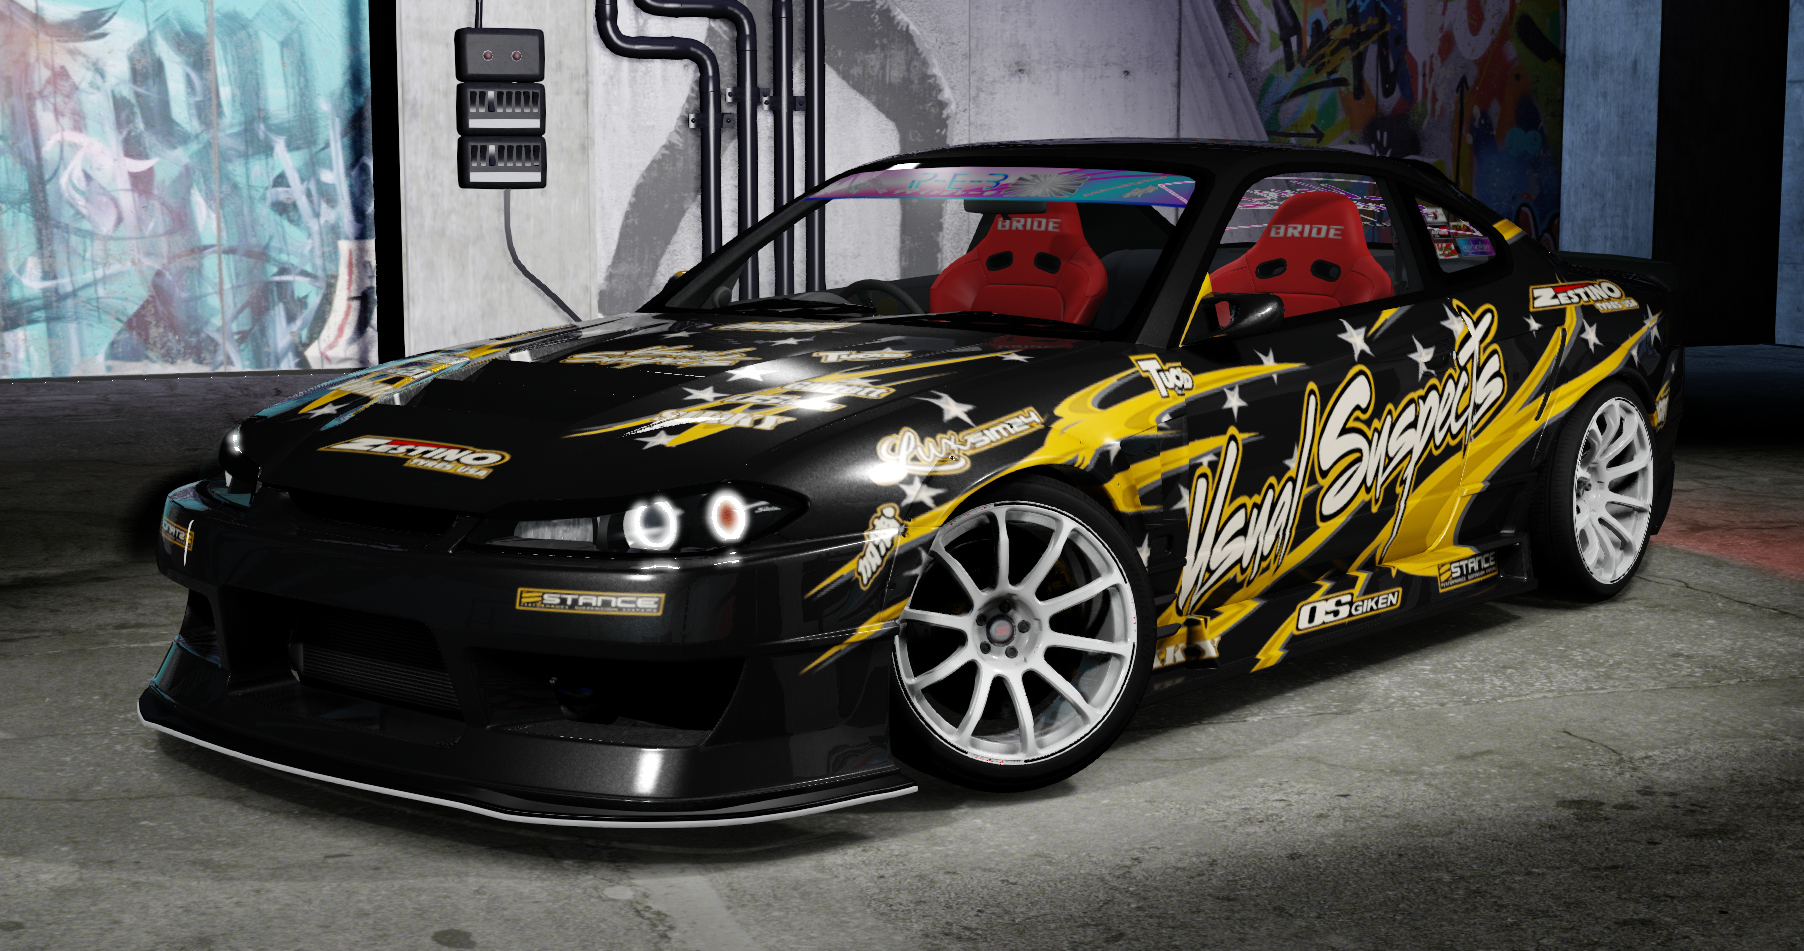 Nissan Silvia S15 WonderGlare, skin TUS team paint black